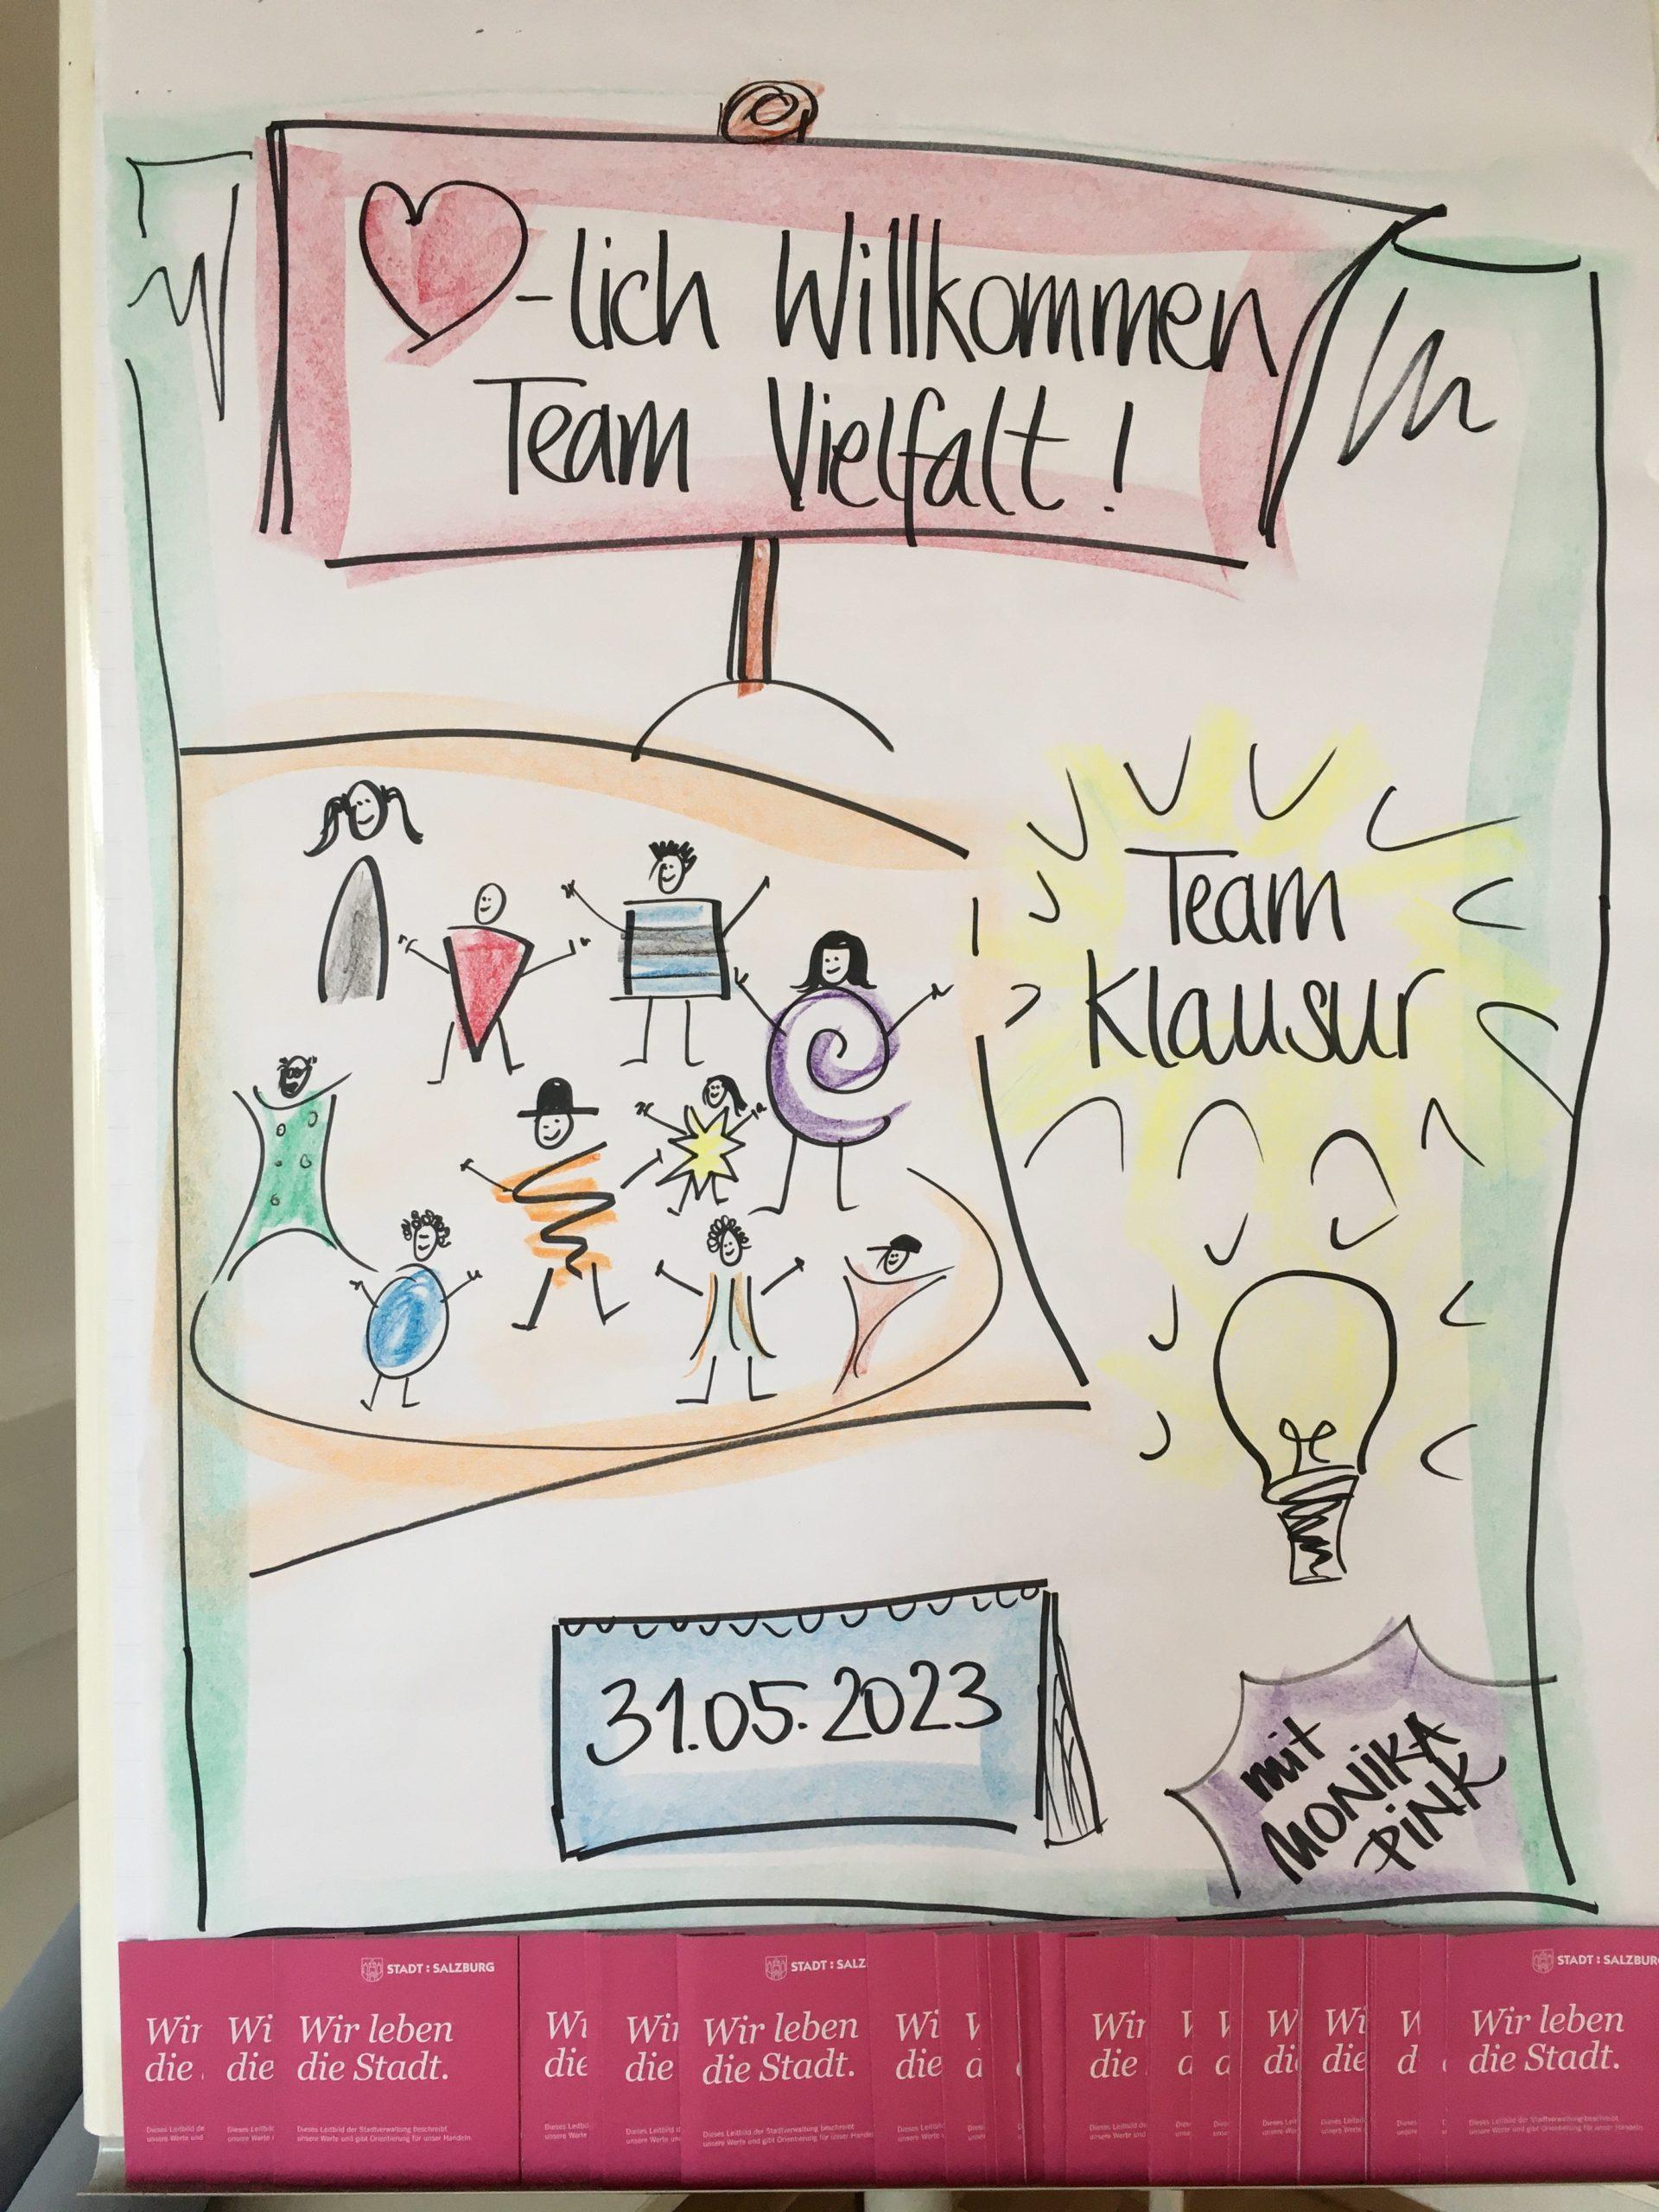 Willkommens-Flip Chart für die Klausur des Teams Vielfalt gezeichnet von Monika Pink. Man sieht verschiedene Figuren und eine leuchtende Glühbirne.